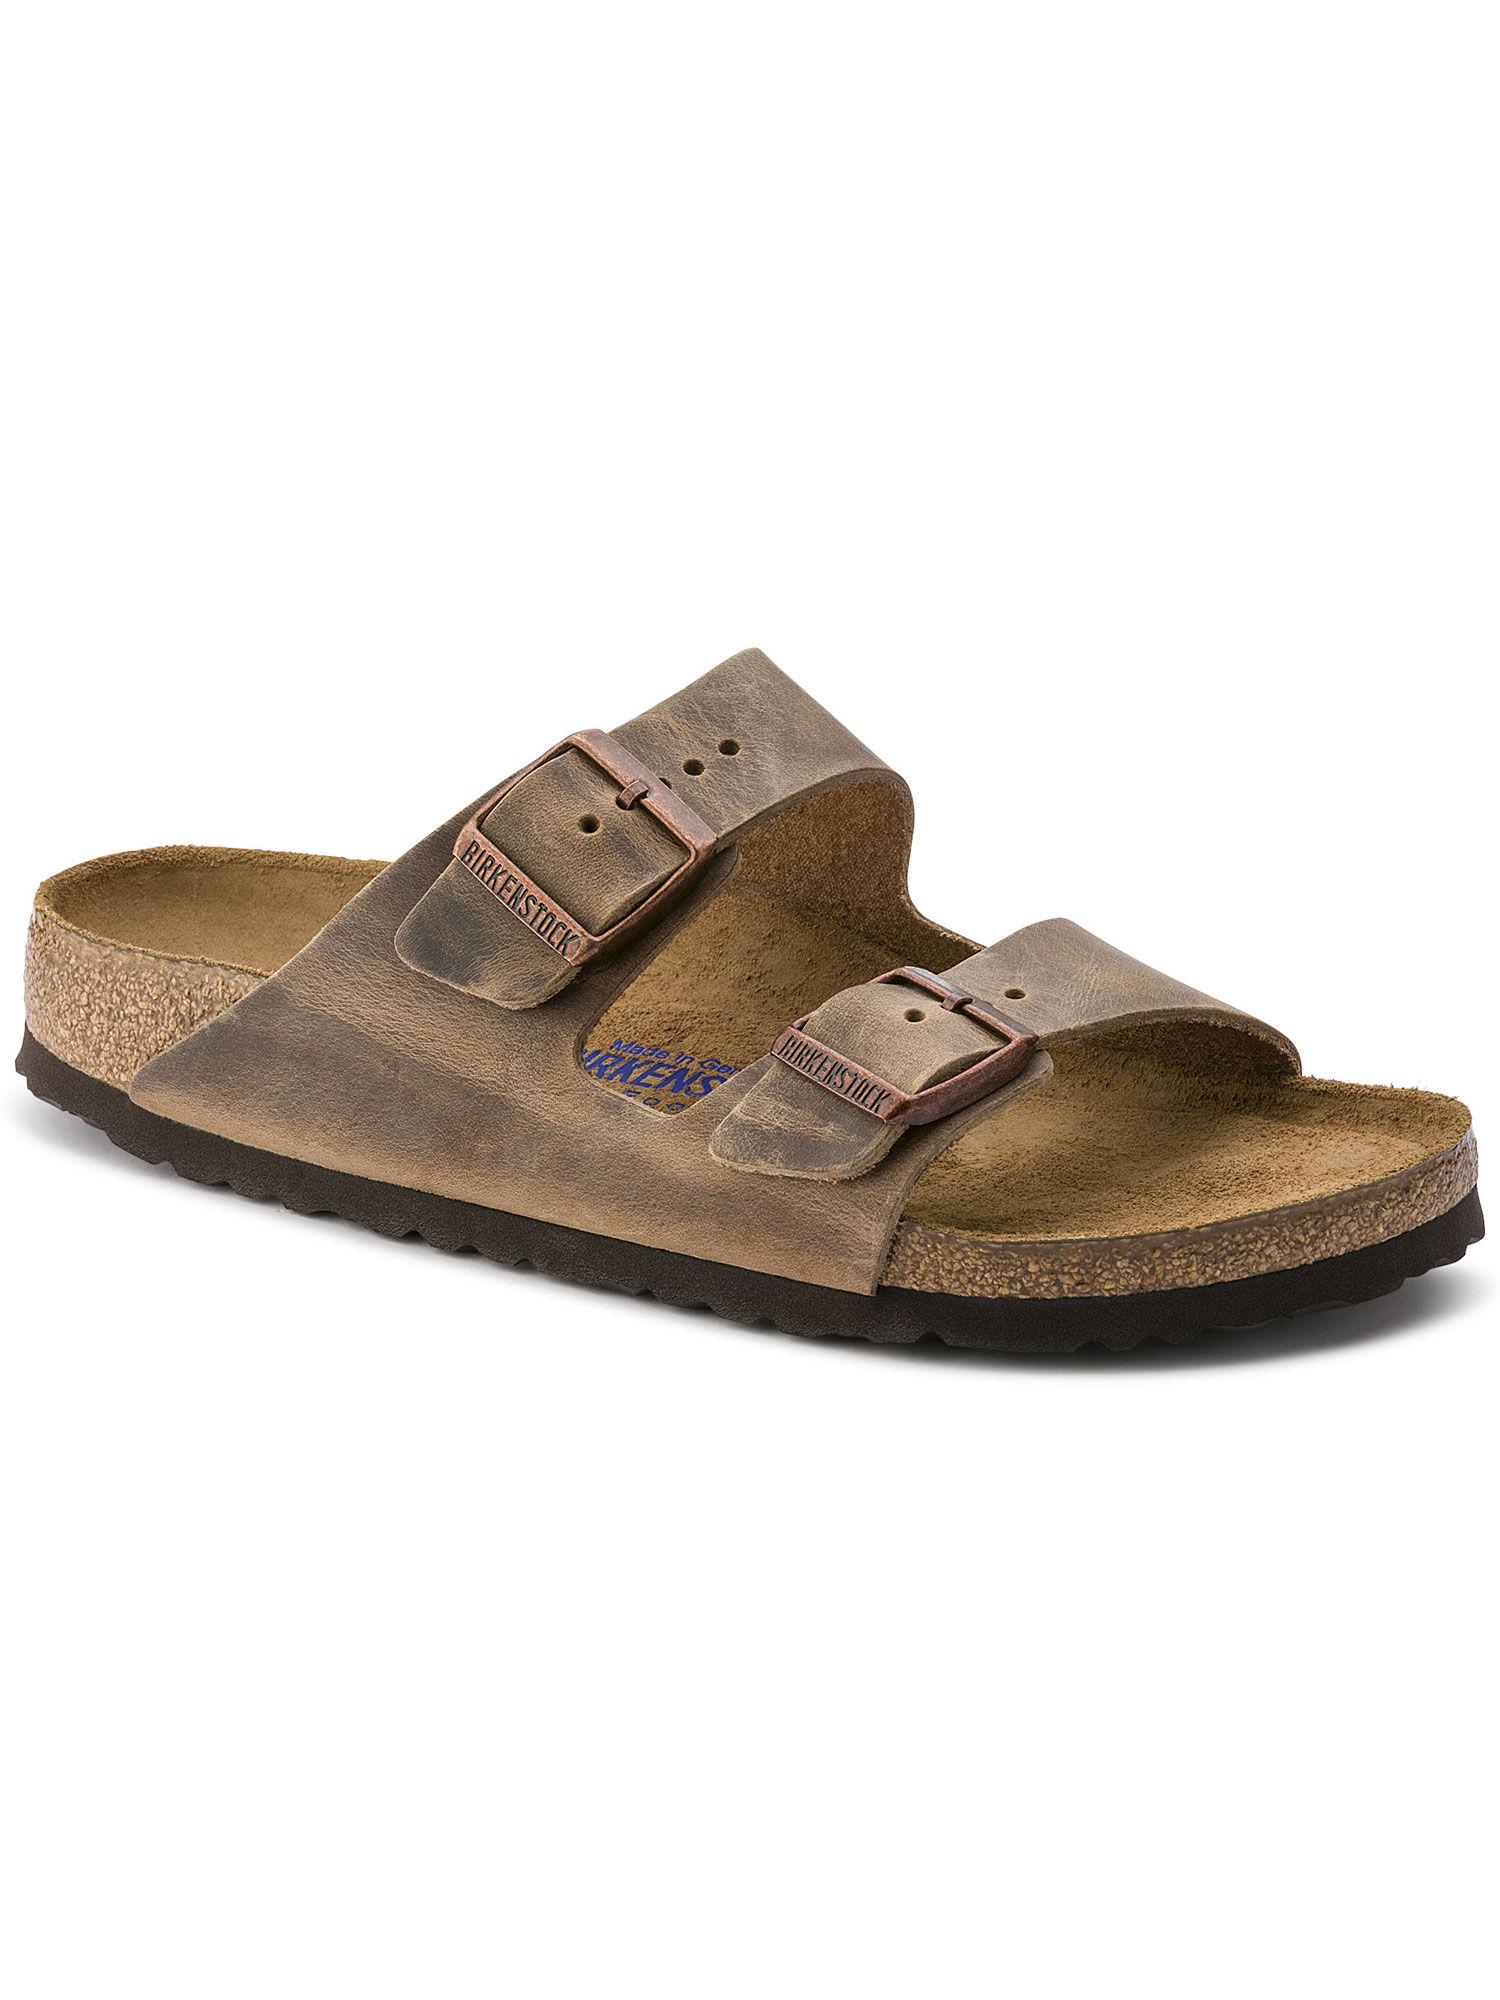 brown-arizona-solid-regular-width-sandals